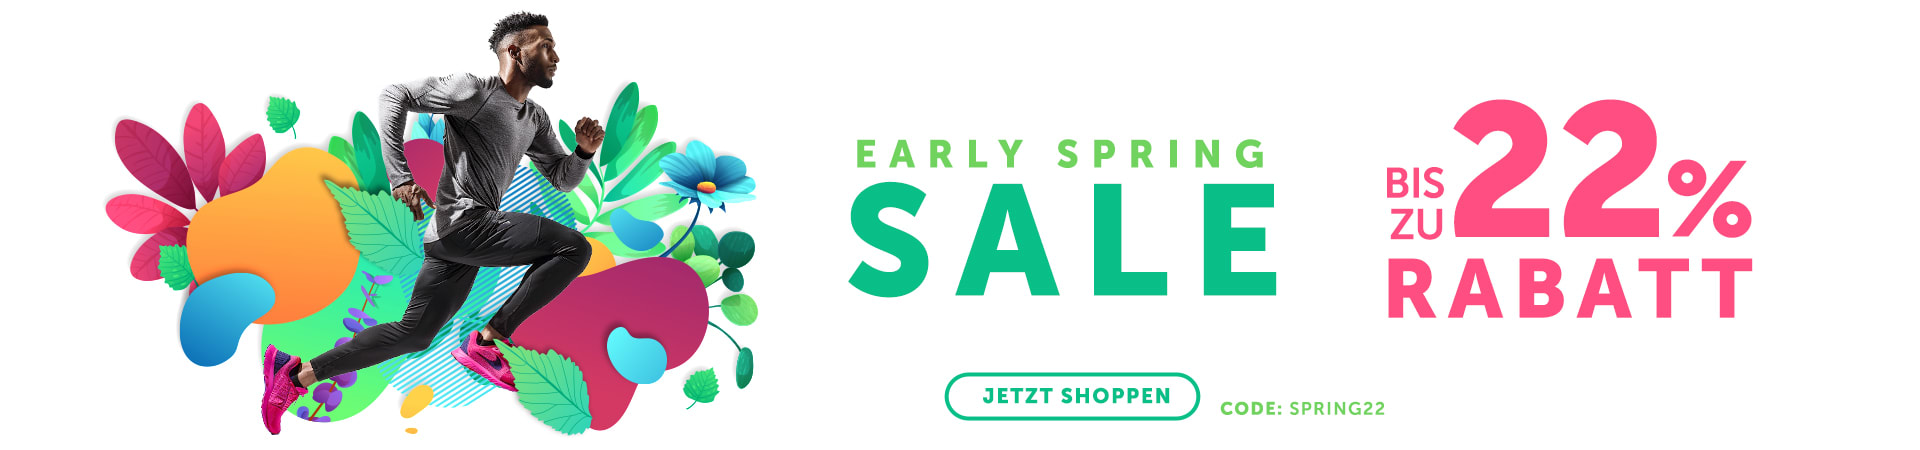 Mehr kaufen, mehr sparen! Mach jetzt mit bei unserem Early Spring Sale und sichere dir bis zu -22%!